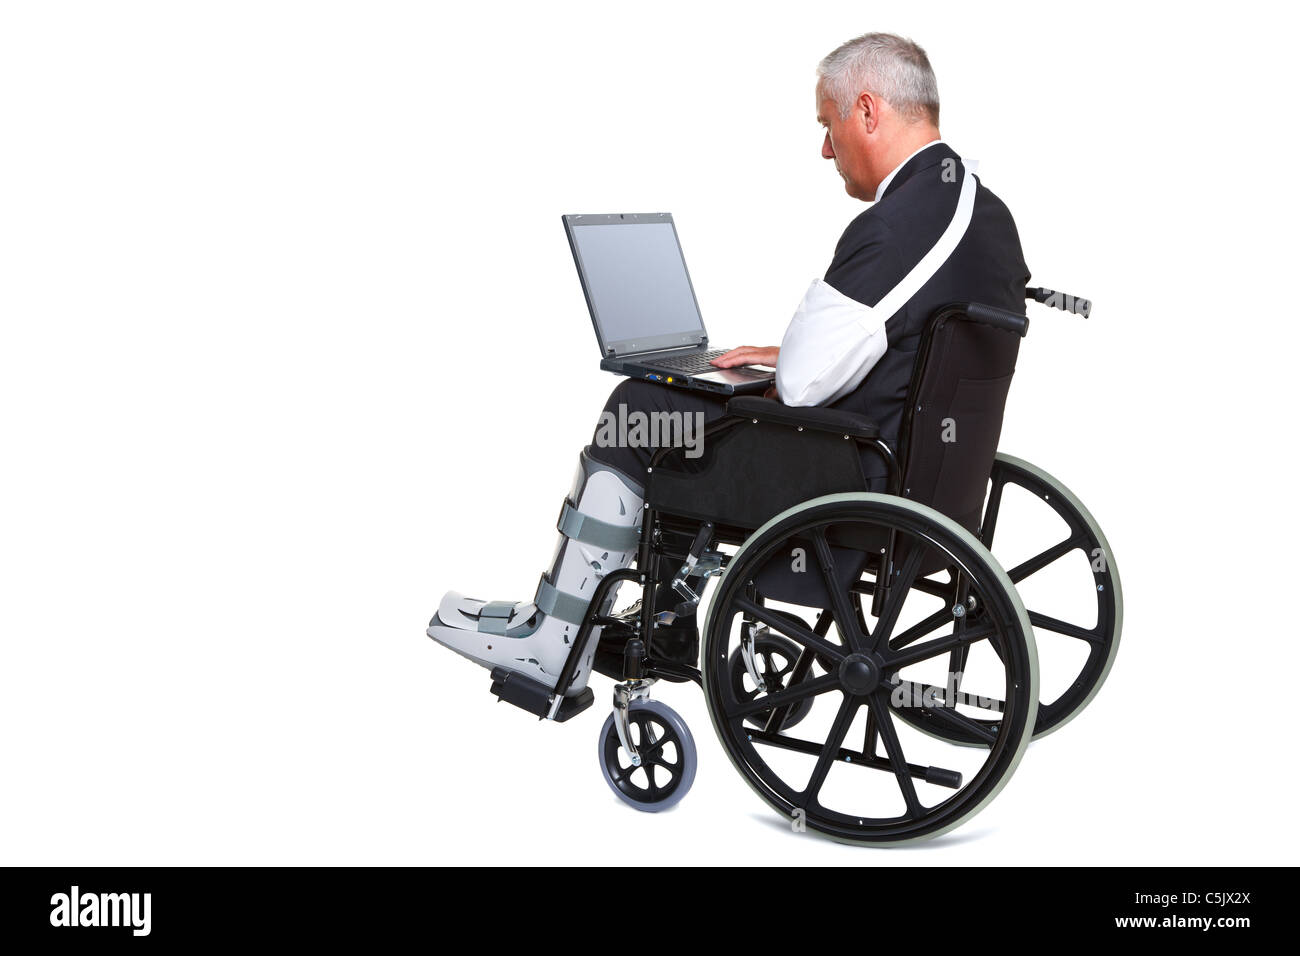 Photo d'un homme blessé dans un fauteuil roulant de travailler sur un ordinateur portable, isolé sur un fond blanc. Banque D'Images